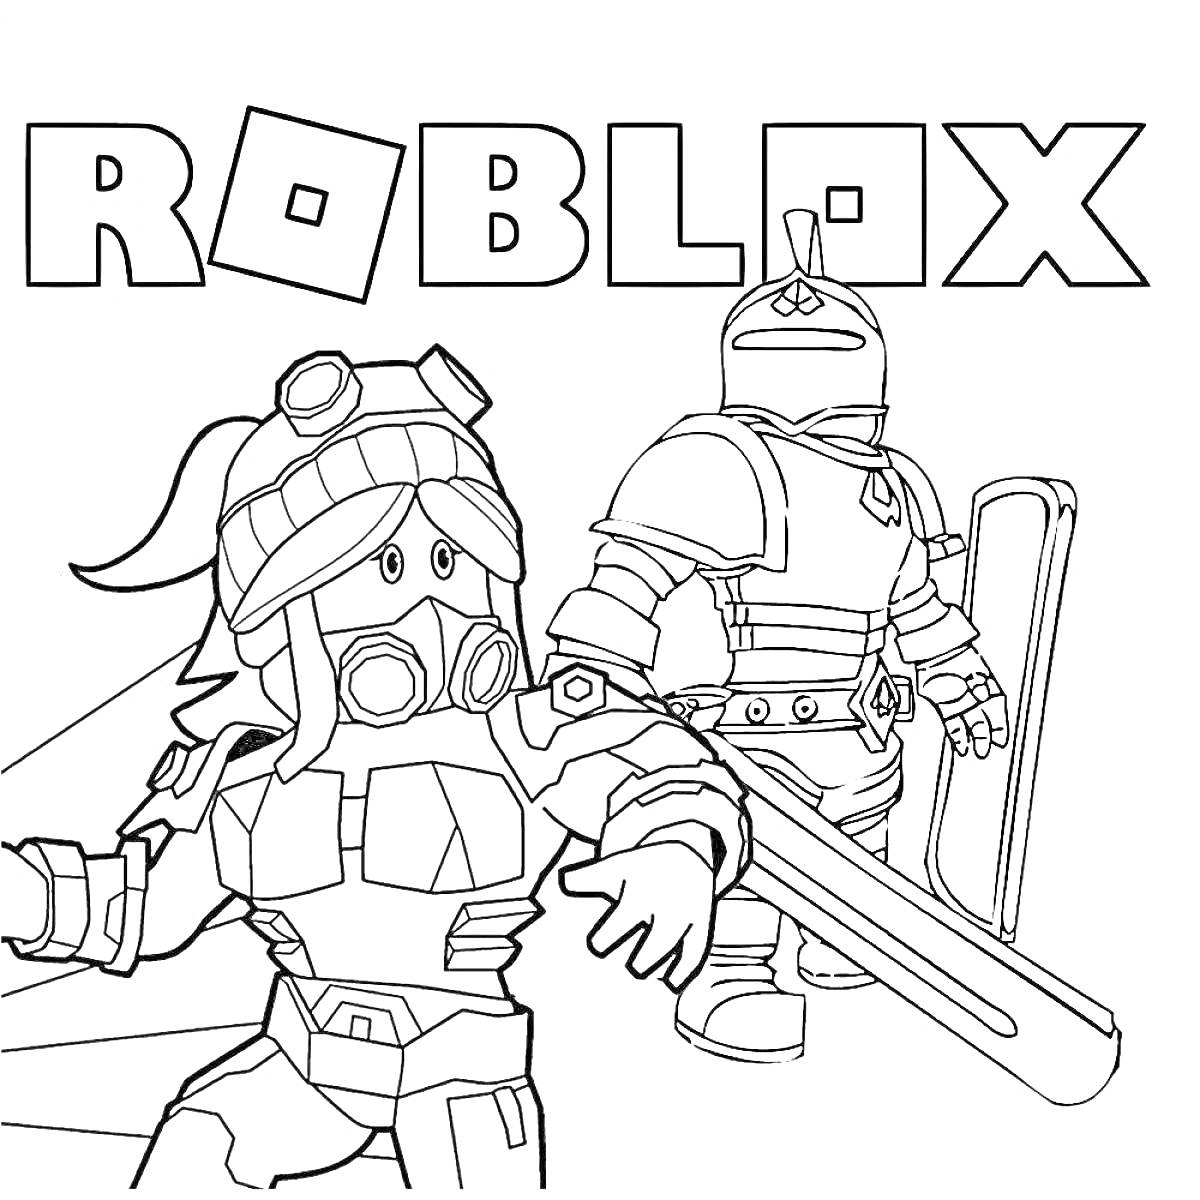 Раскраска Два персонажа Роблокс в броне и шлемах с надписью ROBLOX